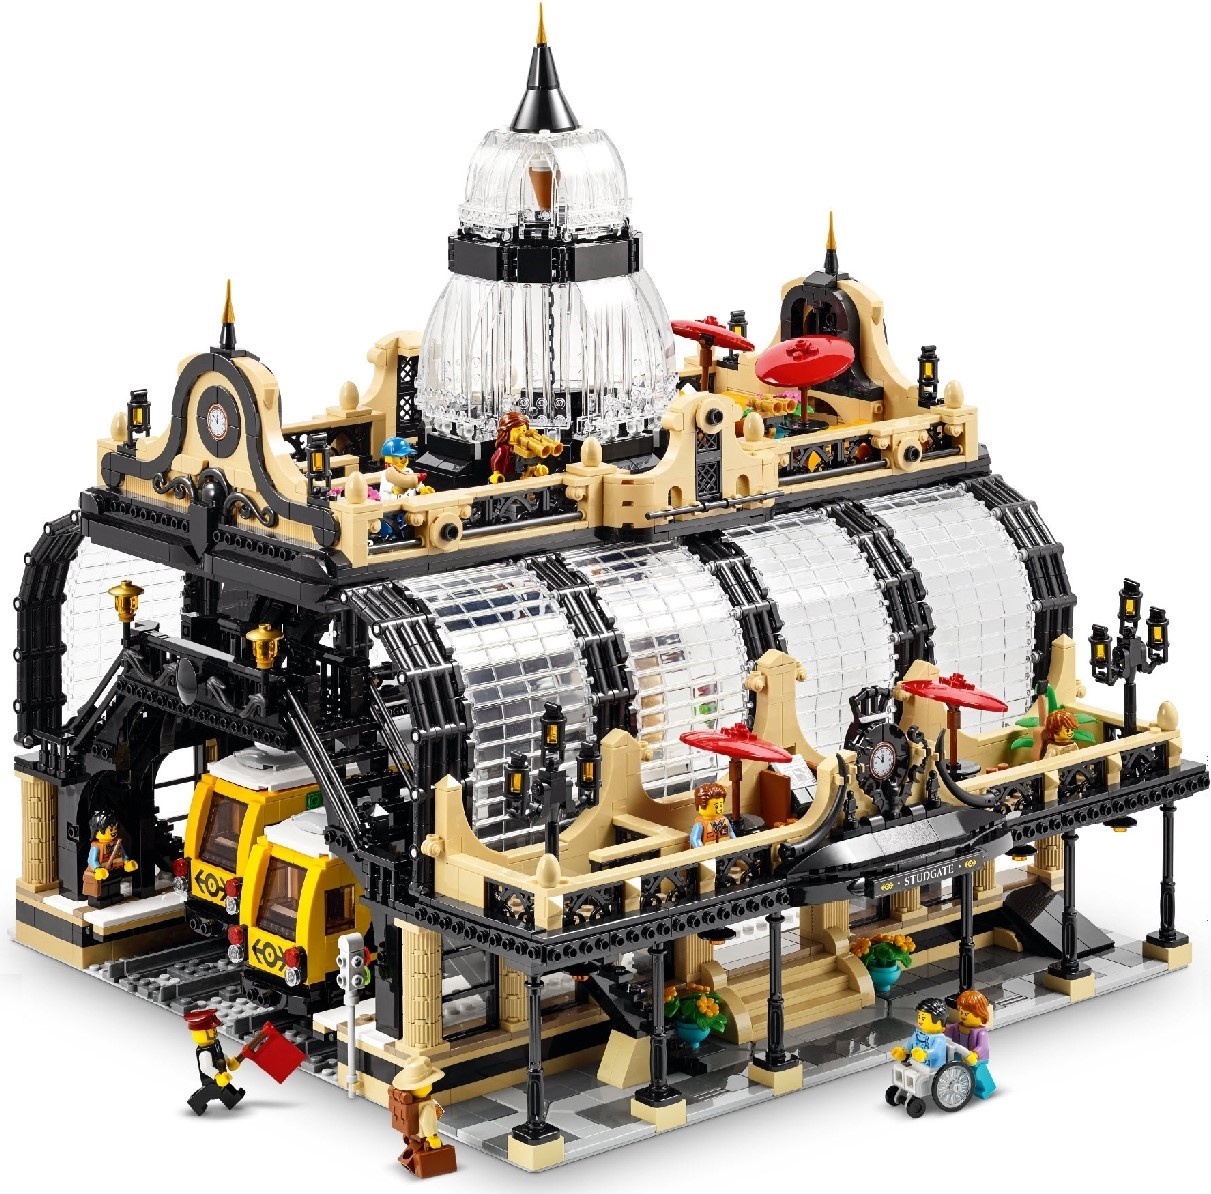 LEGO Bricklink | Brickset